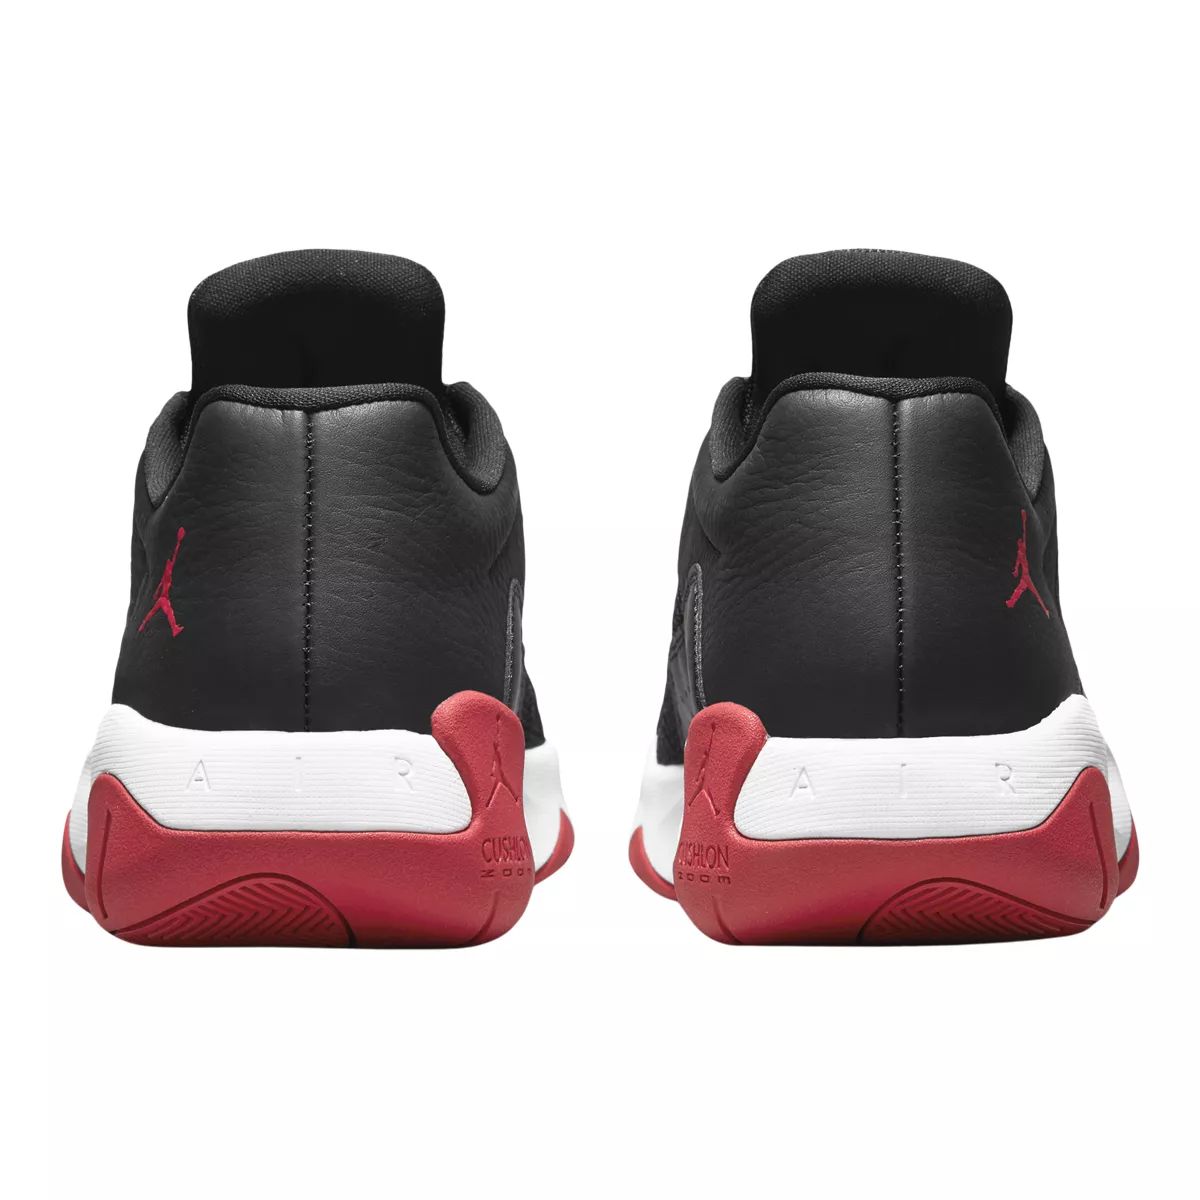 Nike Men's Air Jordan 11 Comfort Basketball Shoes, Low Top